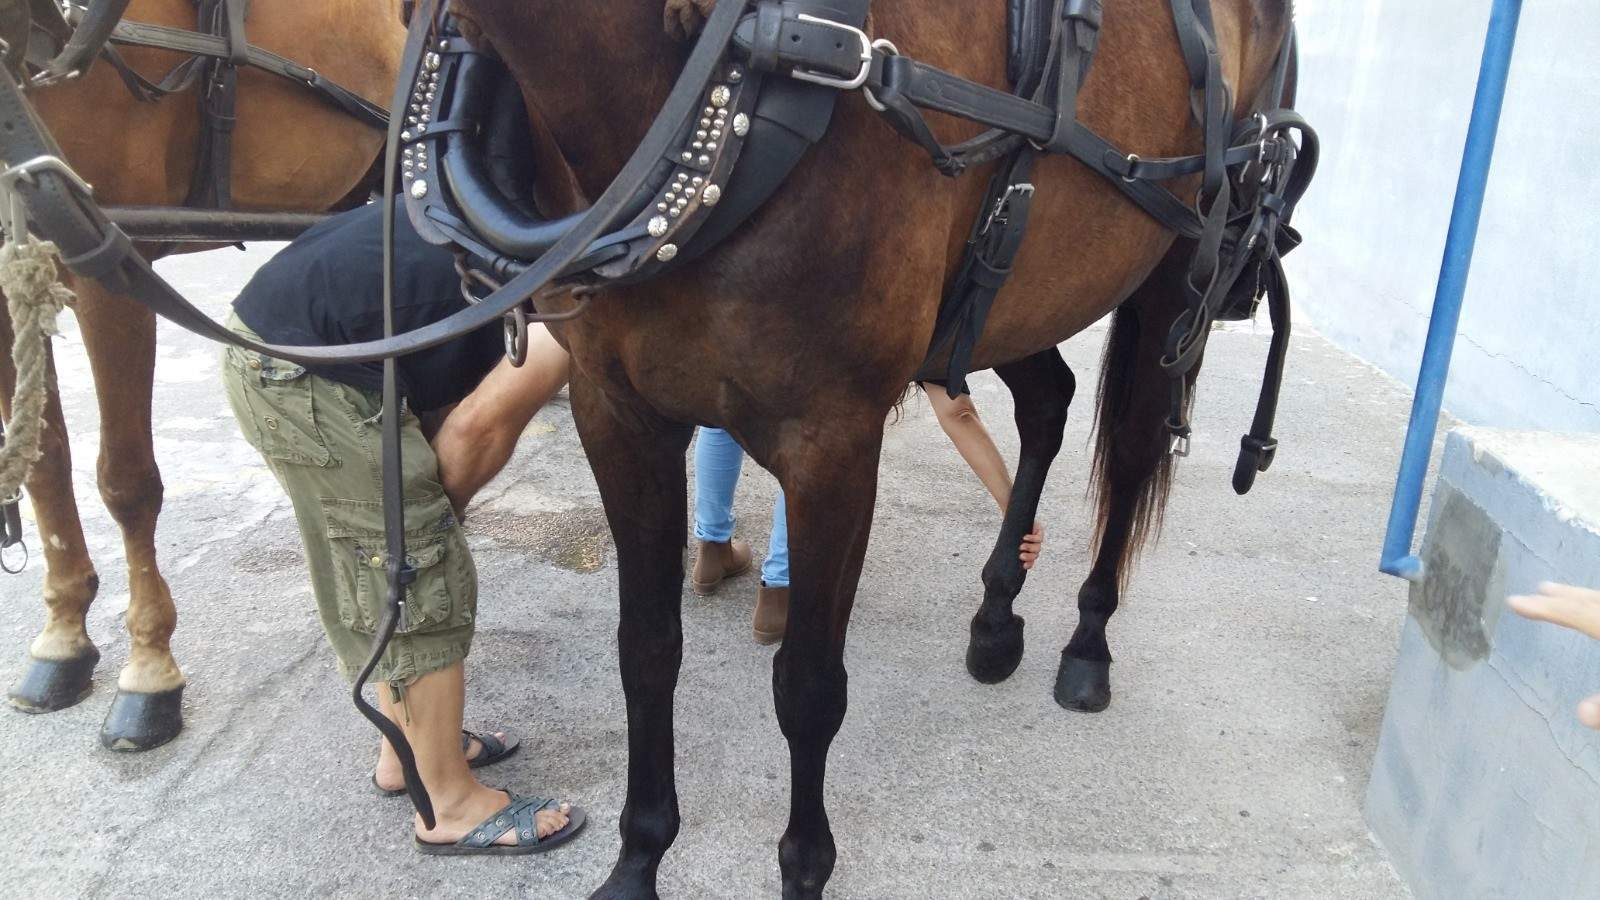 El Ayuntamiento de Palma tramita todas las denuncias presentadas por actuaciones que afectan a caballos de galeras